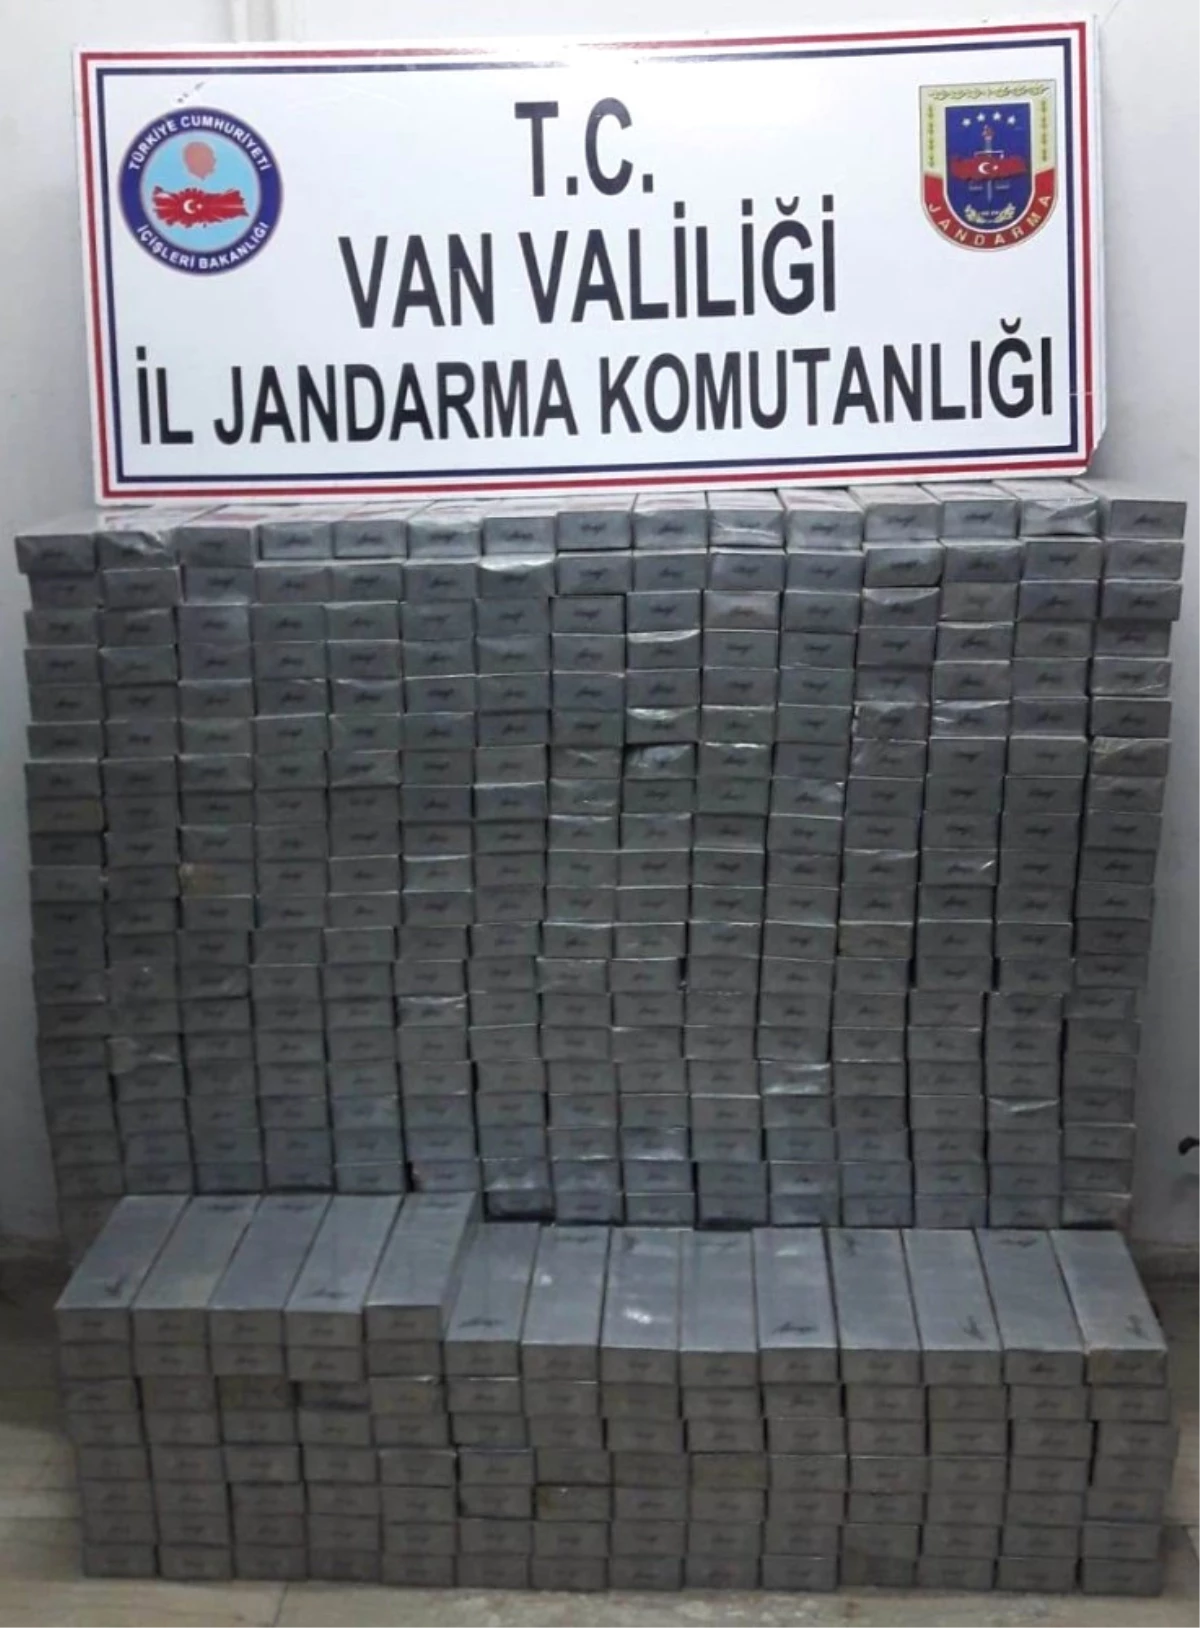 Jandarma 7 Bin 820 Paket Kaçak Sigara Ele Geçirdi